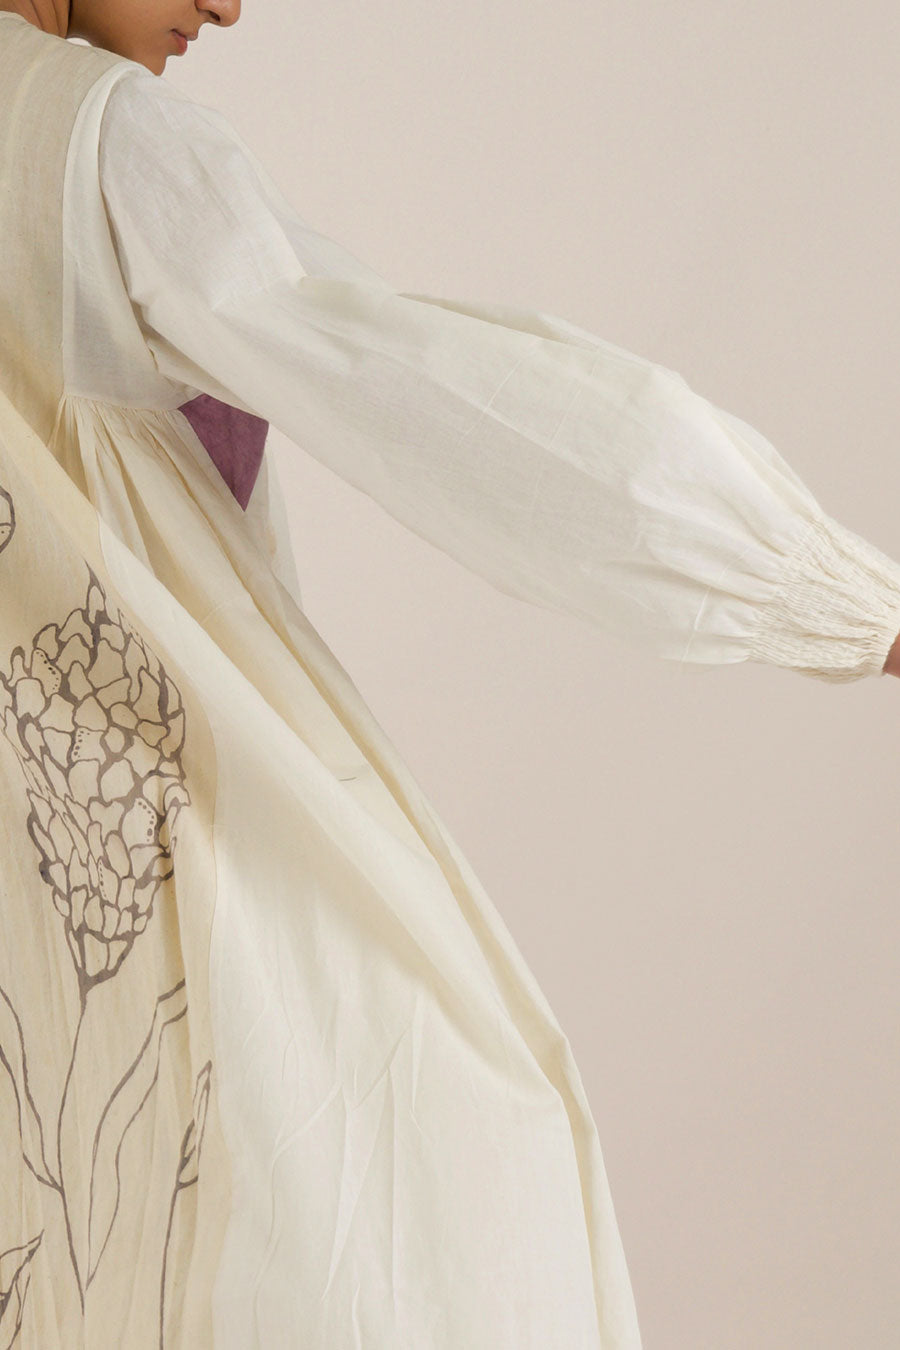 Off-White Gathered Kalidaar Cotton Dress